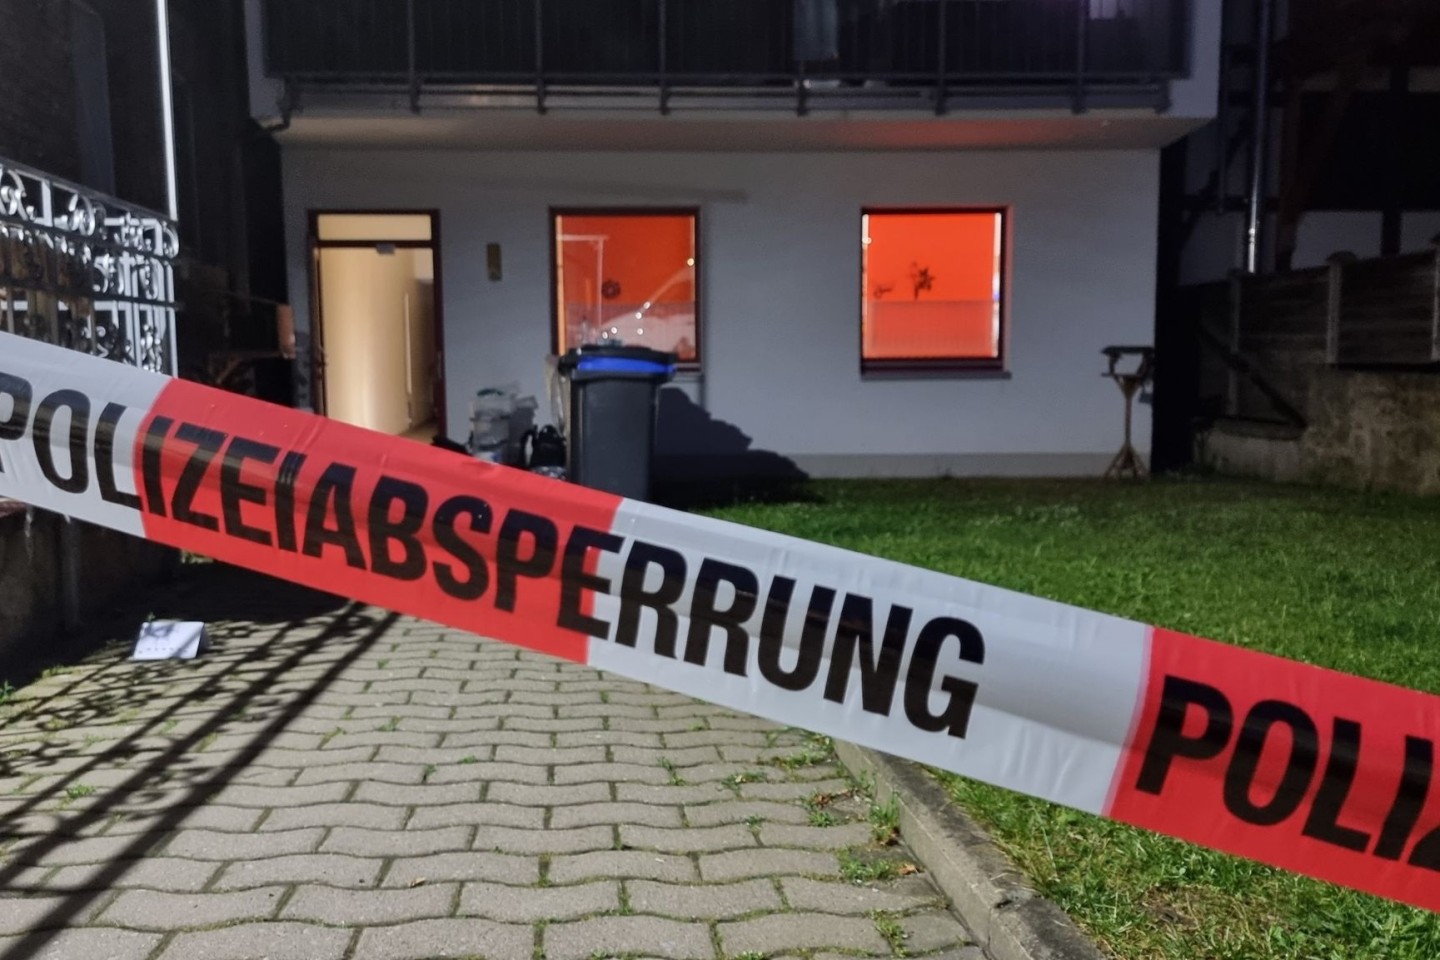 Blick auf die Rückseite des Schreibwarengeschäfts in Obernkirchen, vor dem ein Absperrband der Polizei hängt. Dort ist eine 75-jährige Frau tot aufgefunden worden.